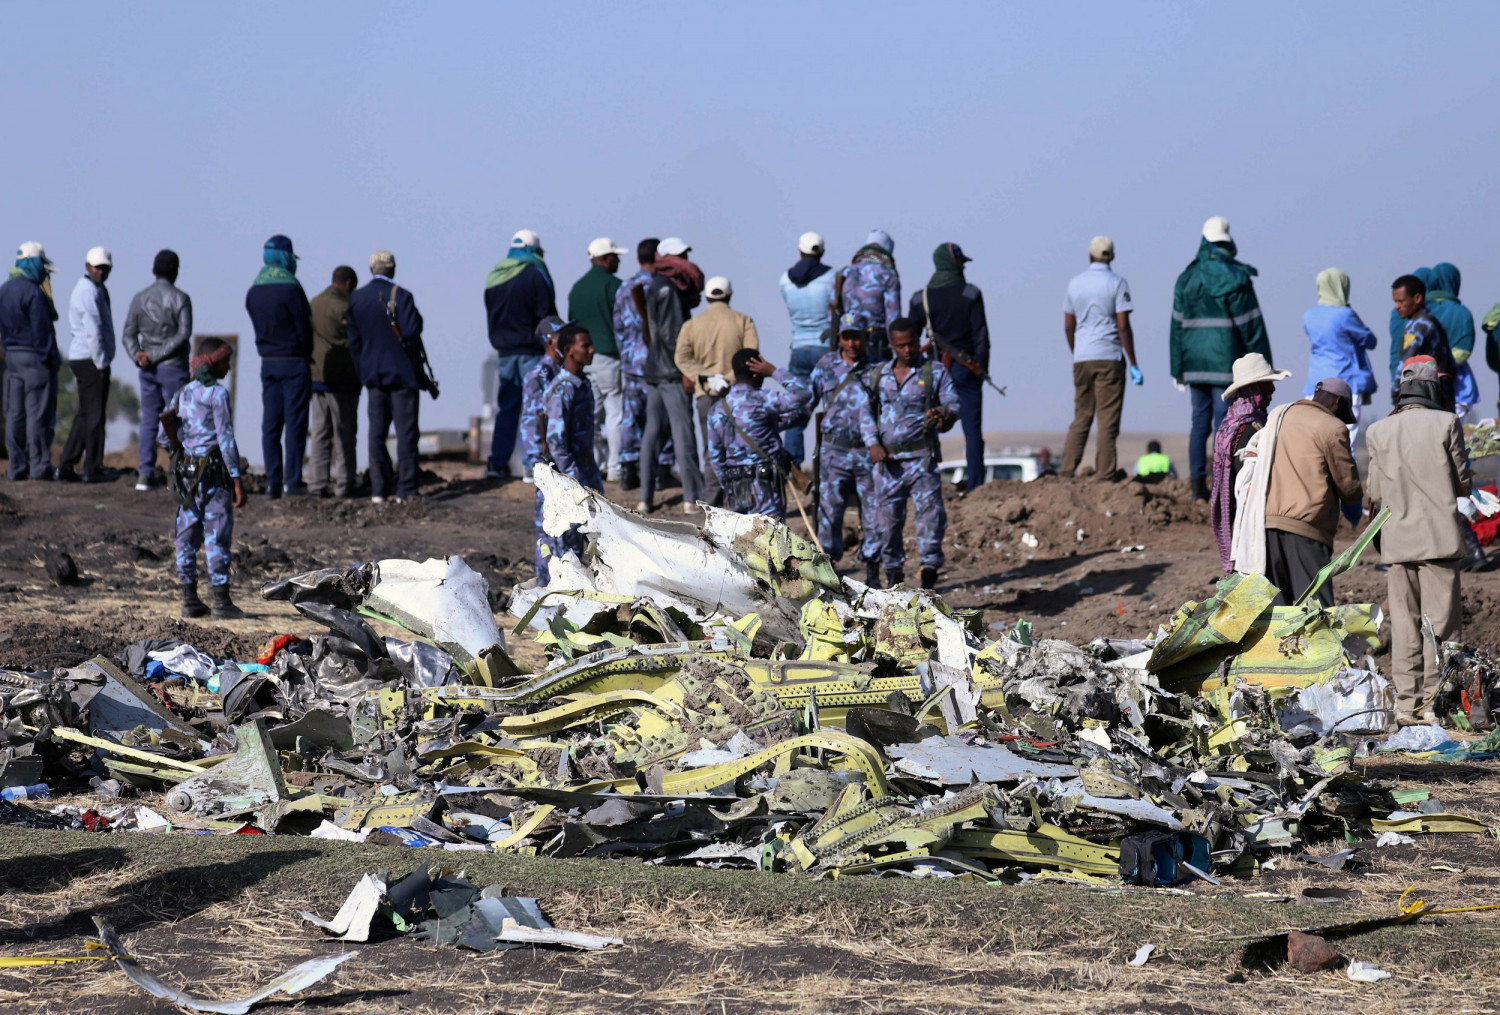 Report: Crew of Doomed Ethiopia Jet Followed Procedures